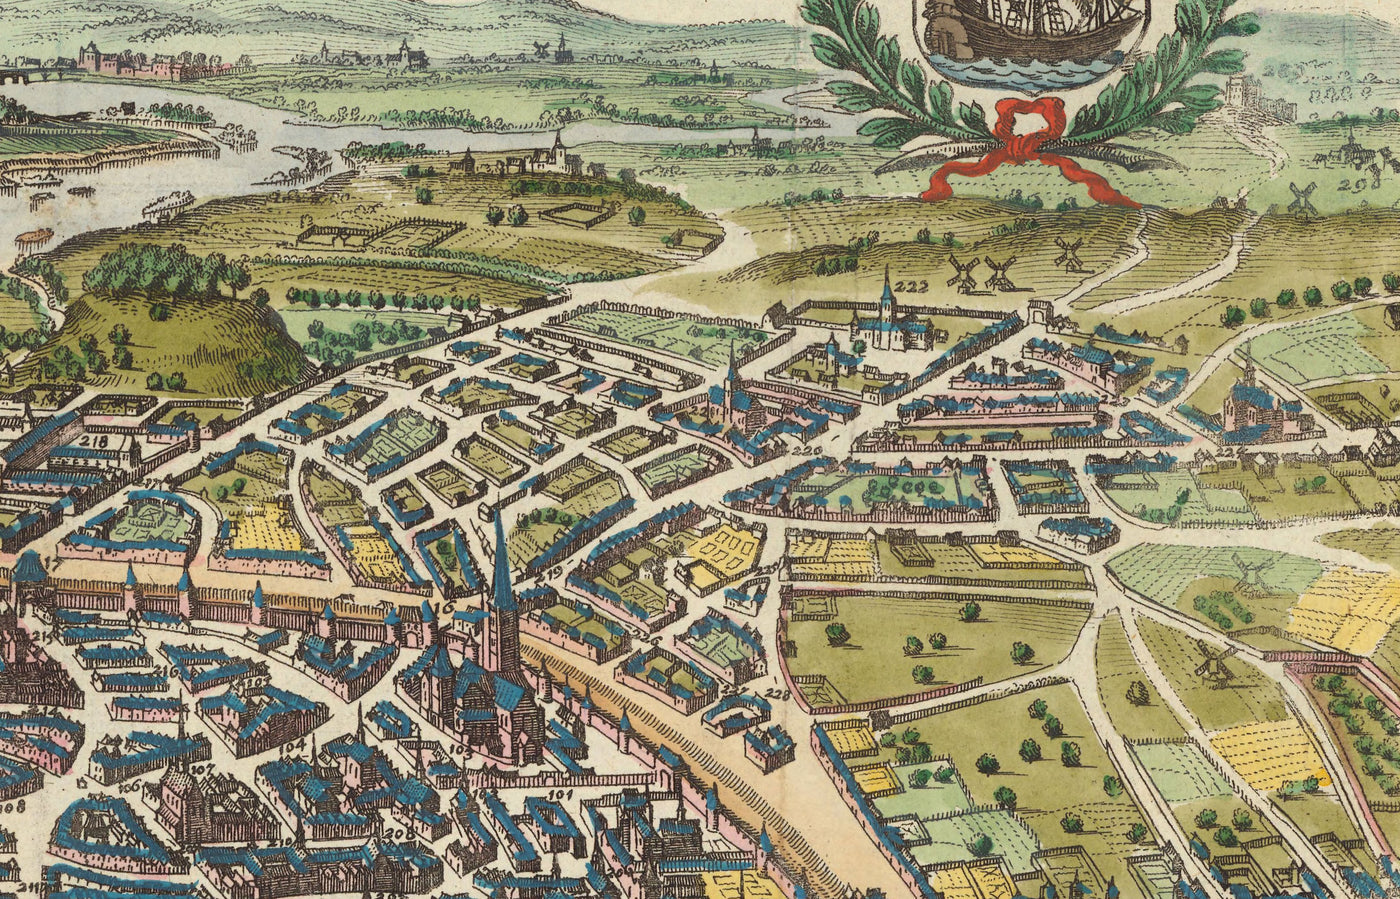 Old Map of Paris, 1655 by Caspar Merian - Ile Saint Louis and de la Cite, Pont Neuf, Seine, Notre Dame